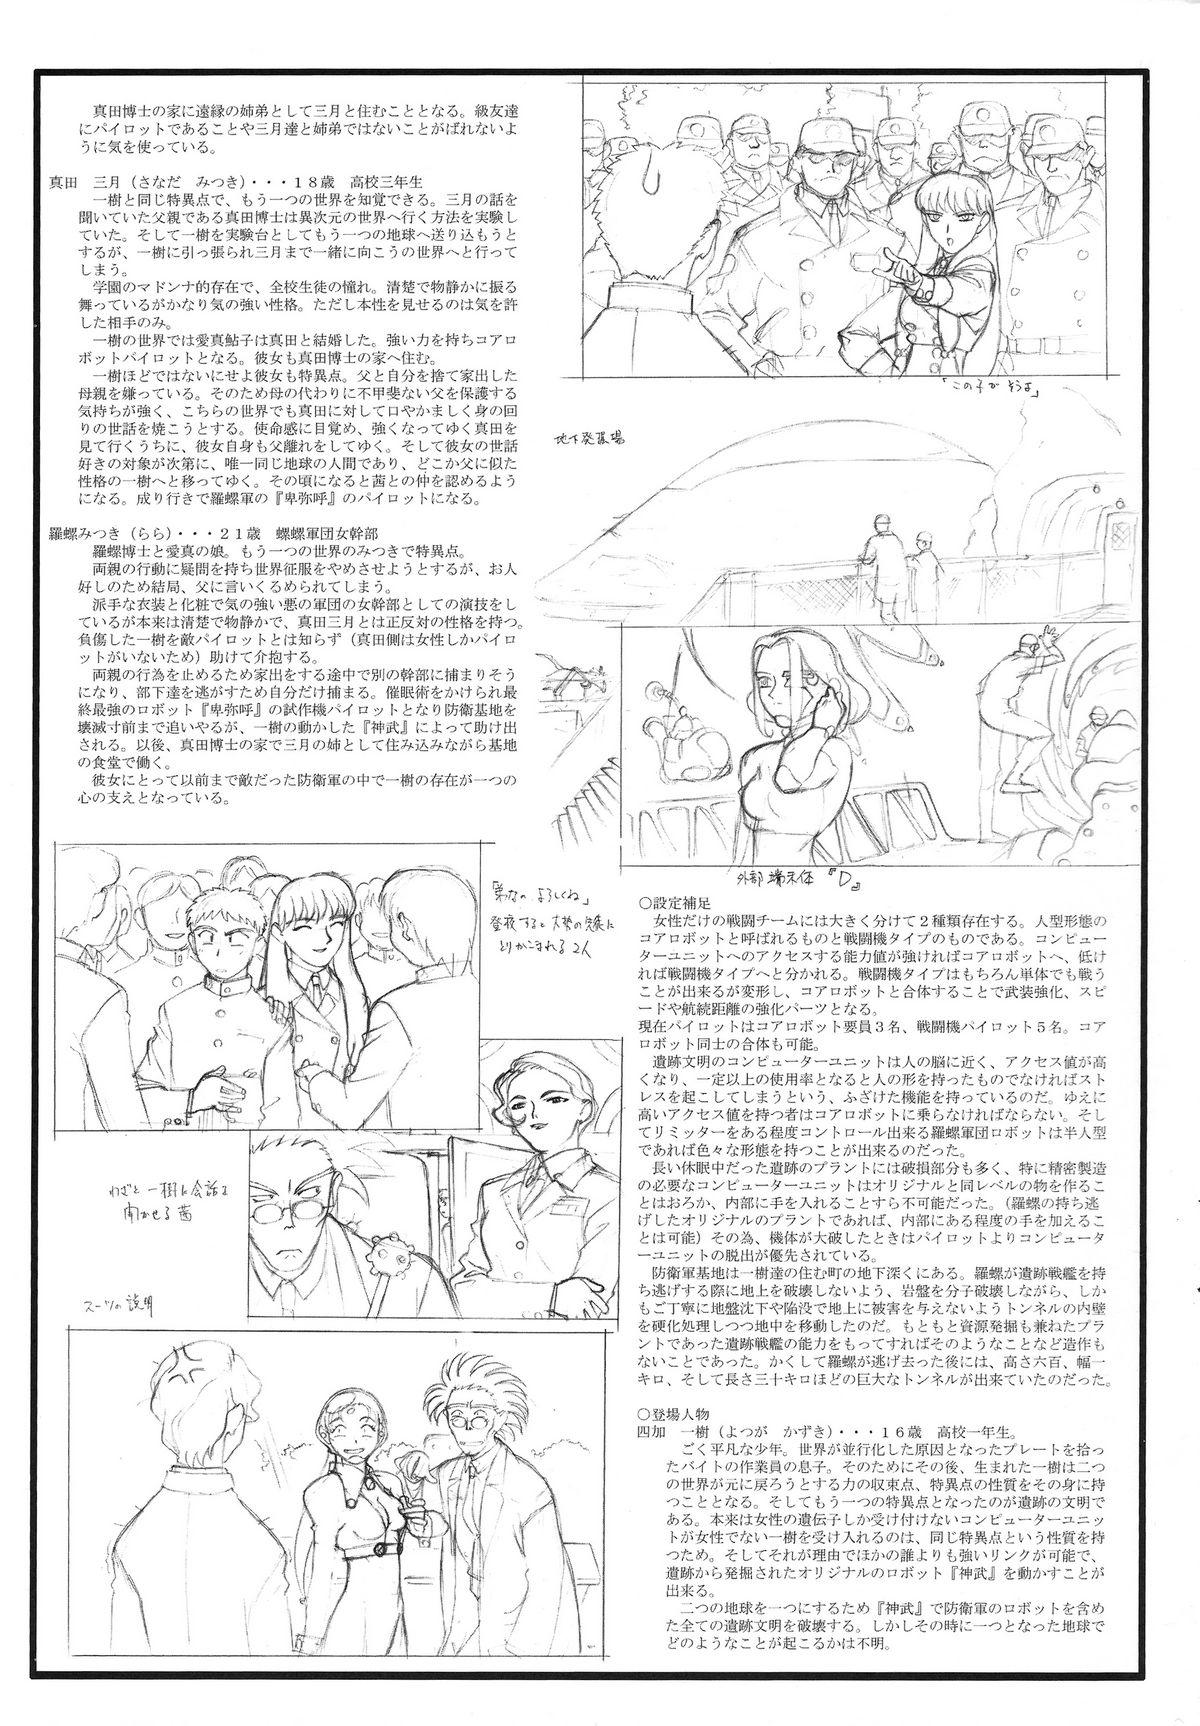 Caliente Omatsuri Zenjitsu no Yoru Heisei Ban 3 - Dual parallel trouble adventure Spaceship agga ruter Wanking - Page 5